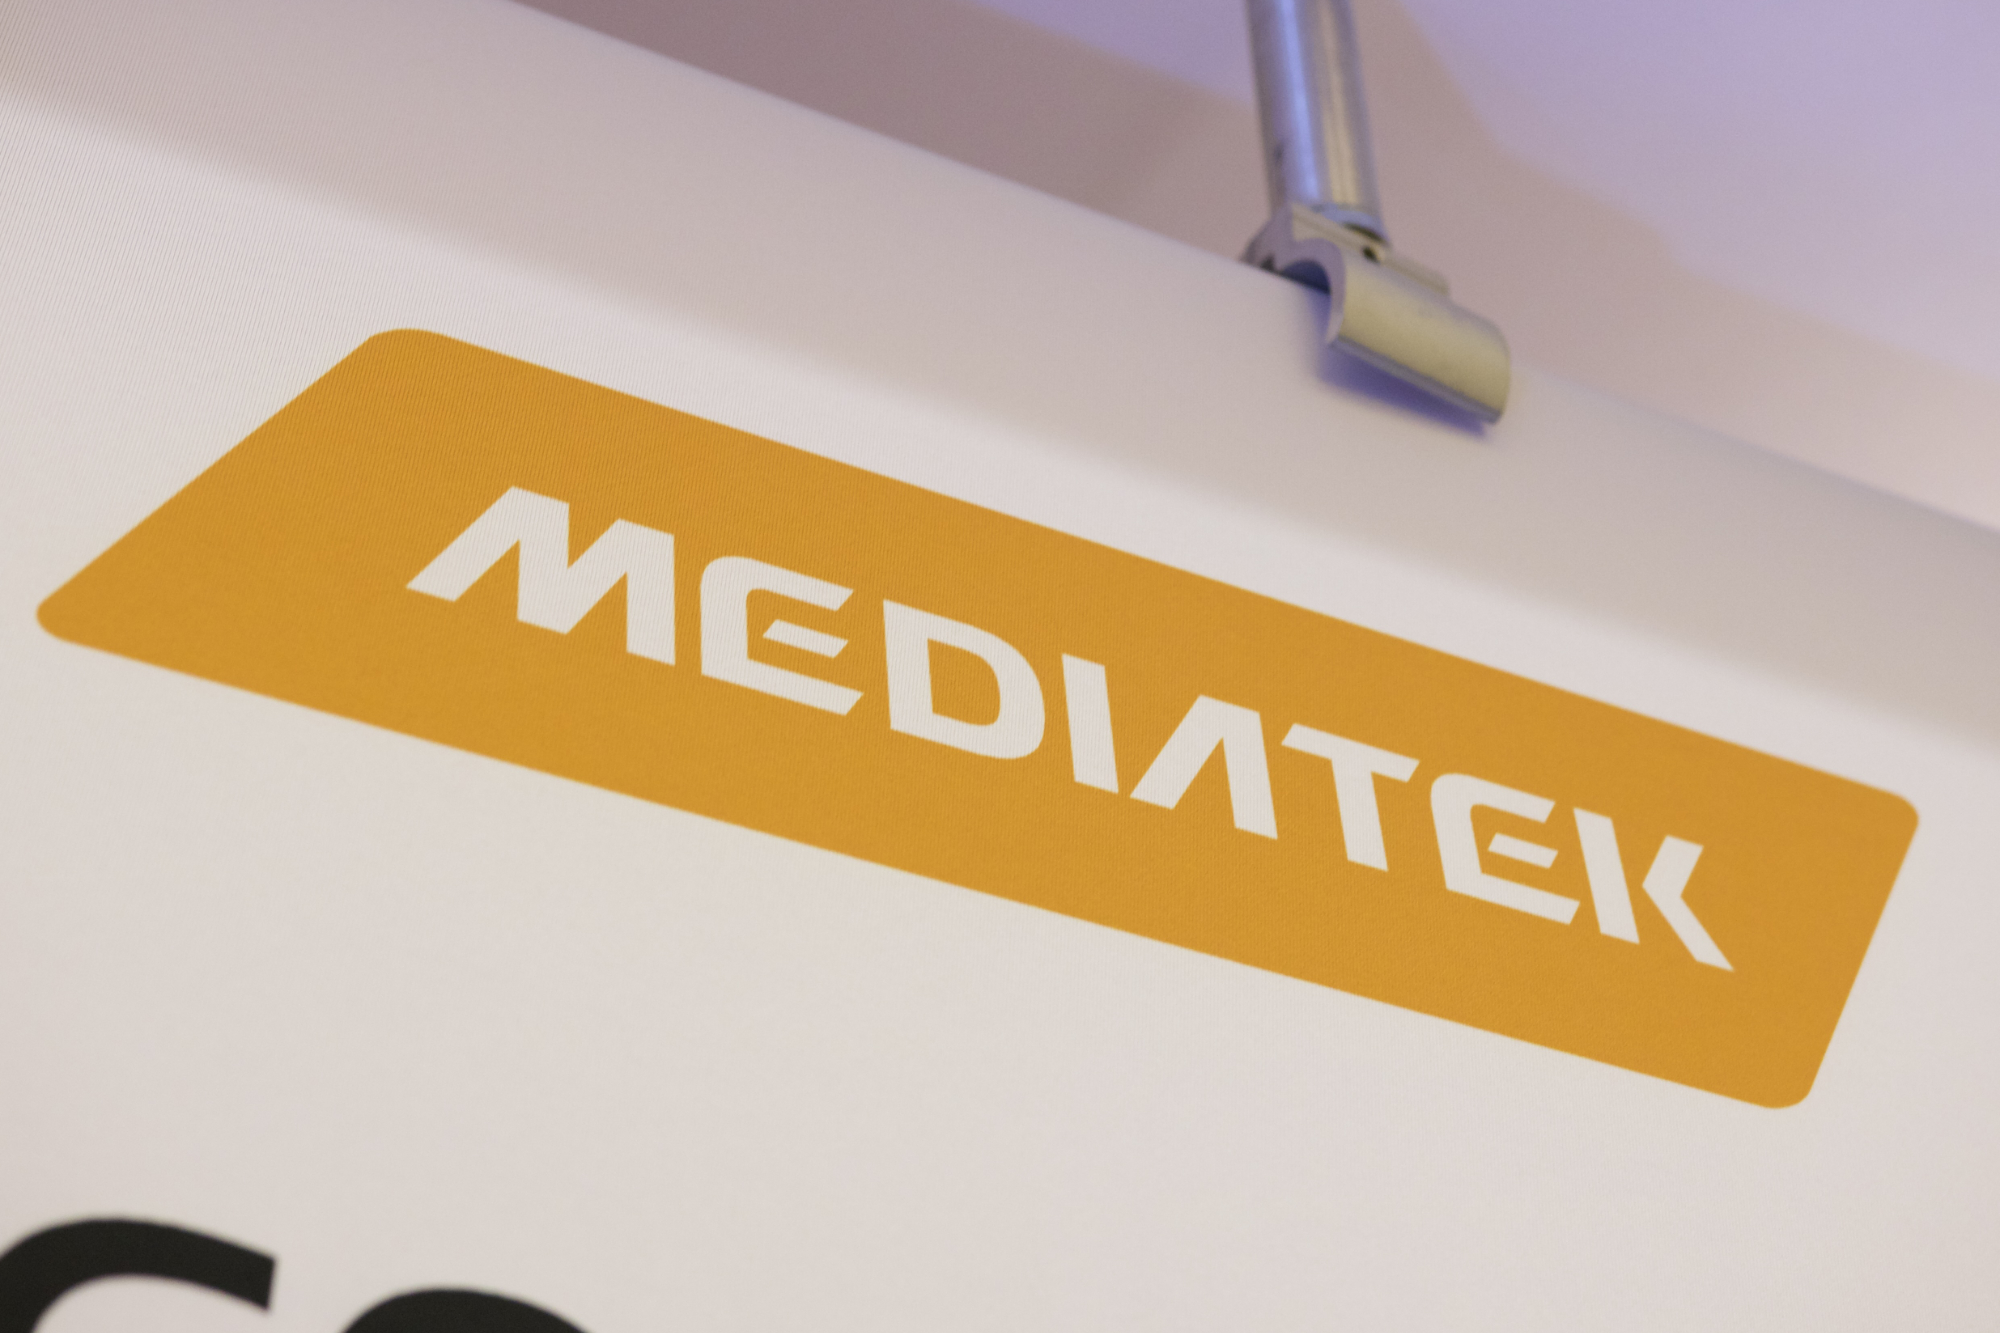 Pôster com logotipo da MediaTek em laranja.